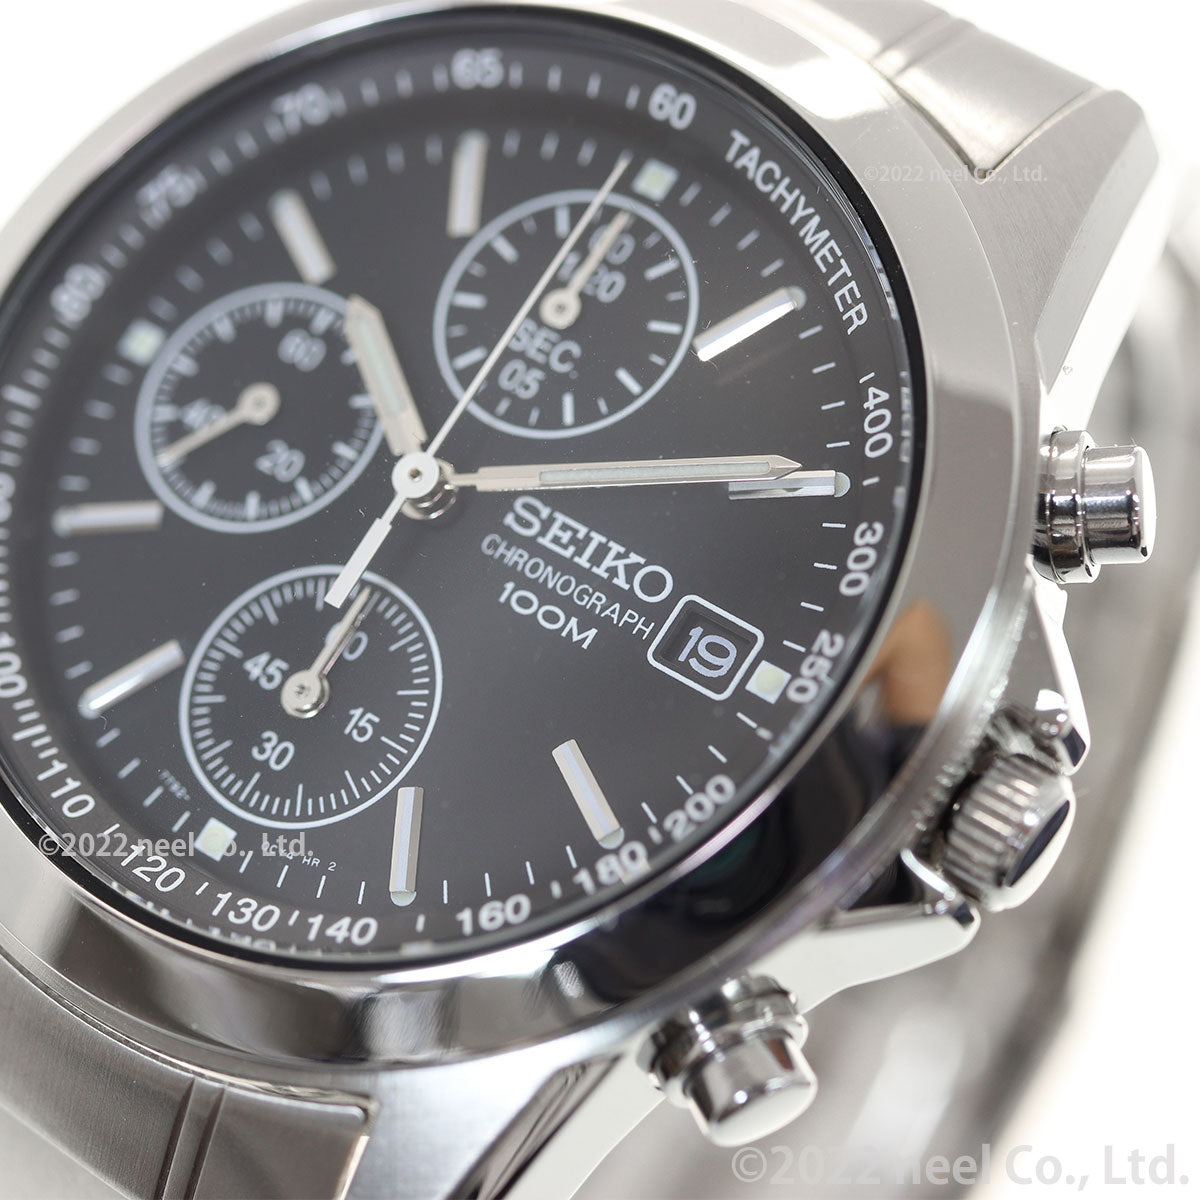 セイコー 逆輸入 クロノグラフ 海外SEIKO 腕時計 メンズ SND309